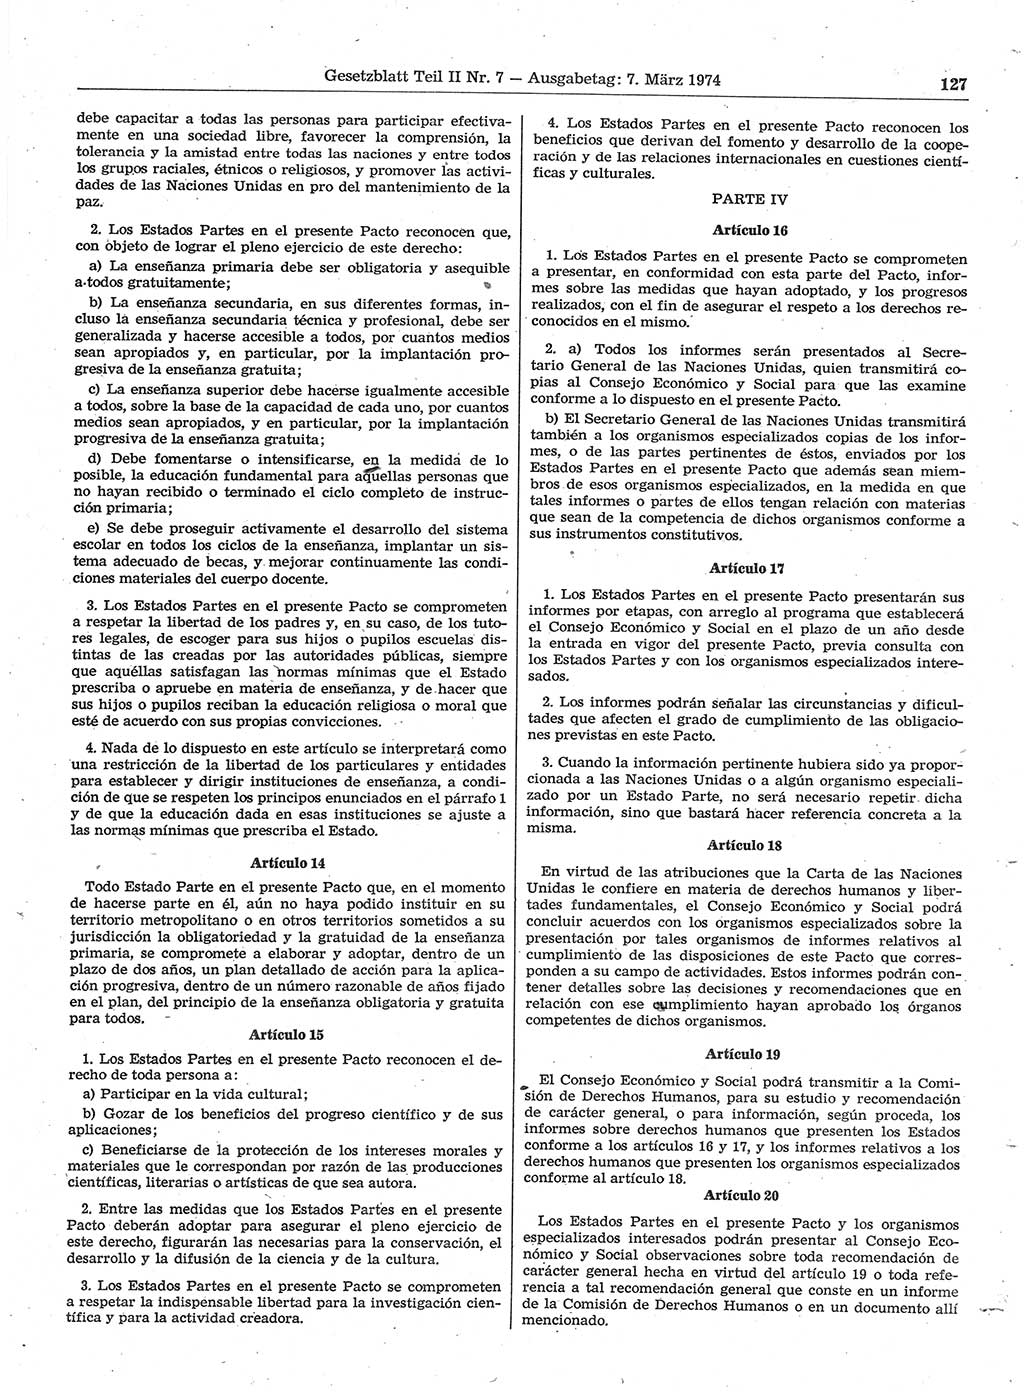 Gesetzblatt (GBl.) der Deutschen Demokratischen Republik (DDR) Teil ⅠⅠ 1974, Seite 127 (GBl. DDR ⅠⅠ 1974, S. 127)